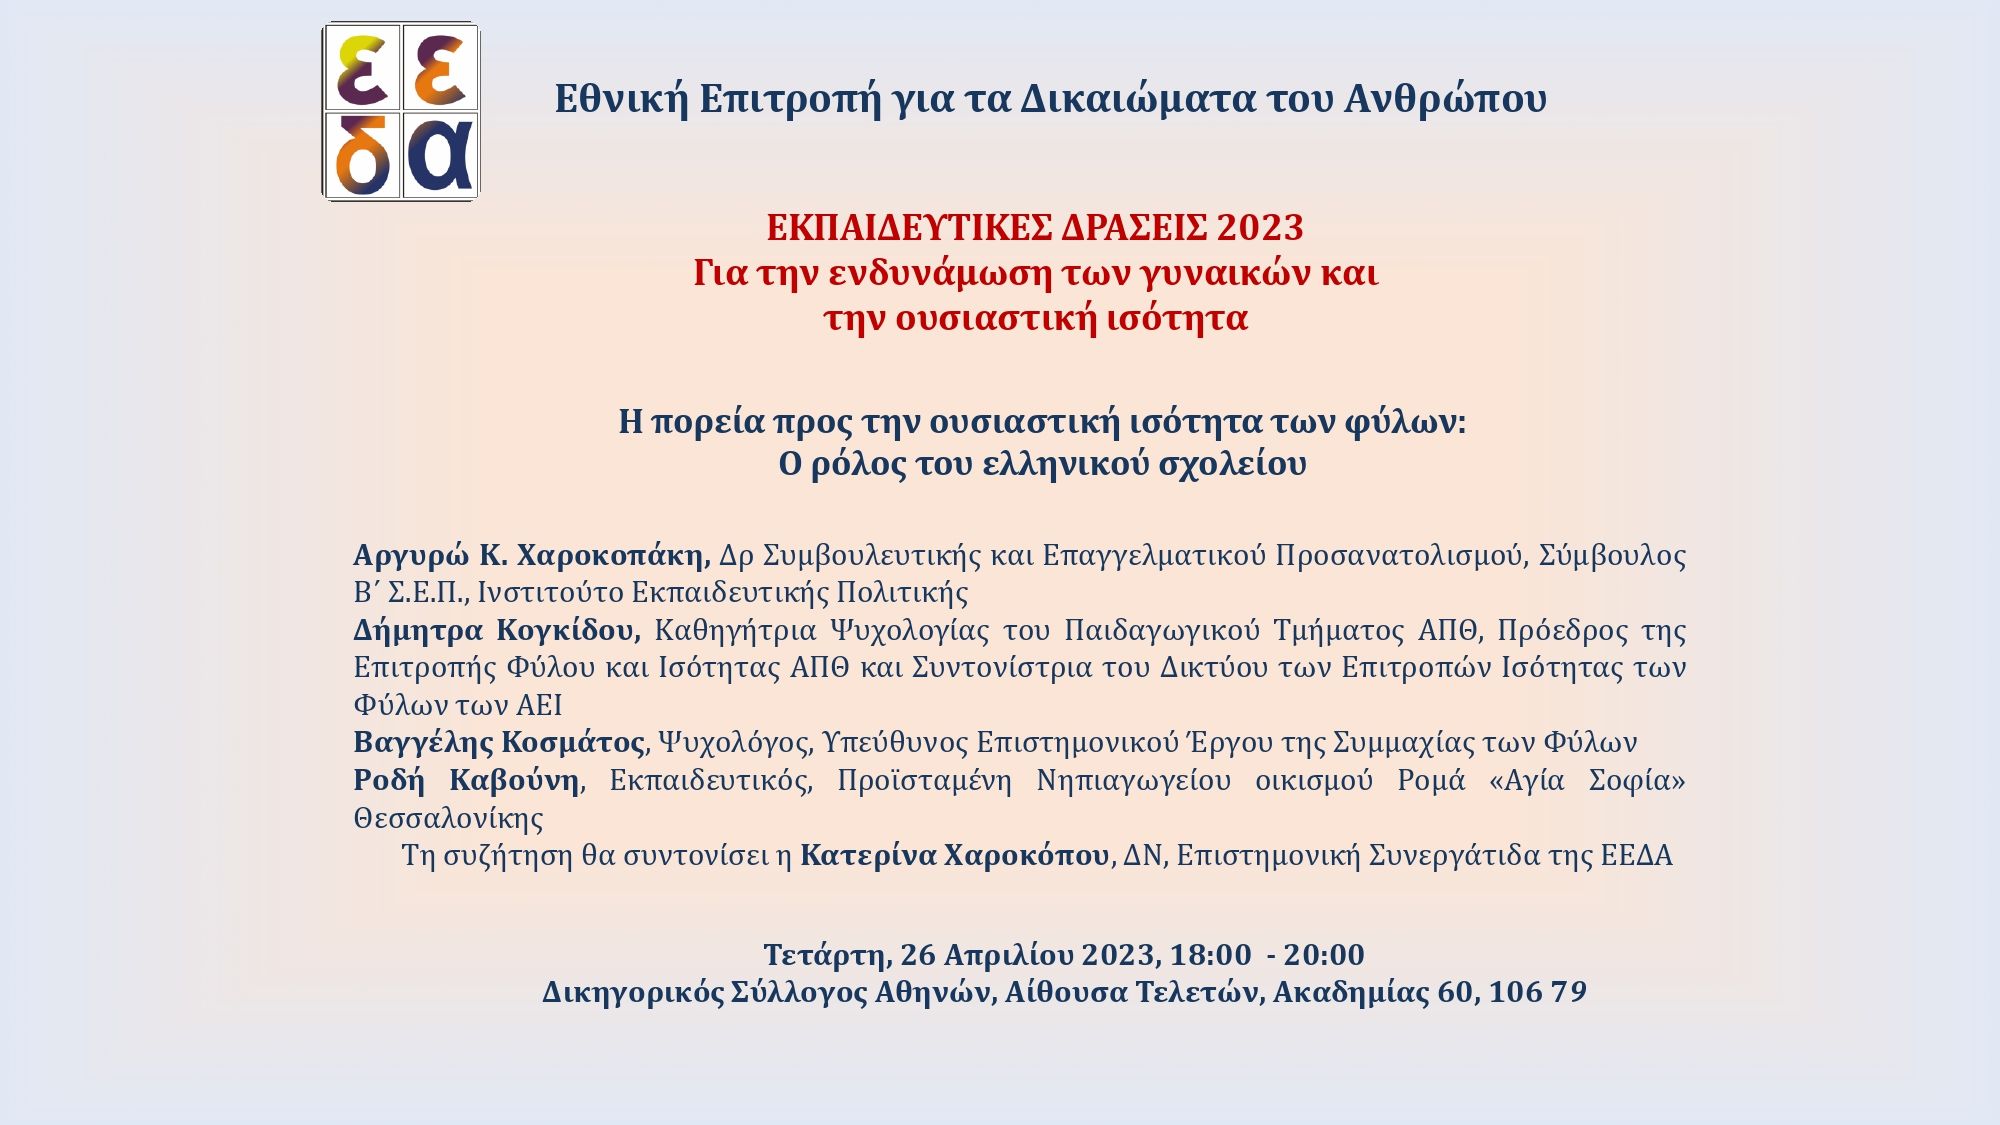 Αφίσα της 2ης εκπαιδευτικής δράσης της ΕΕΔΑ για την ουσιαστική ισότητα